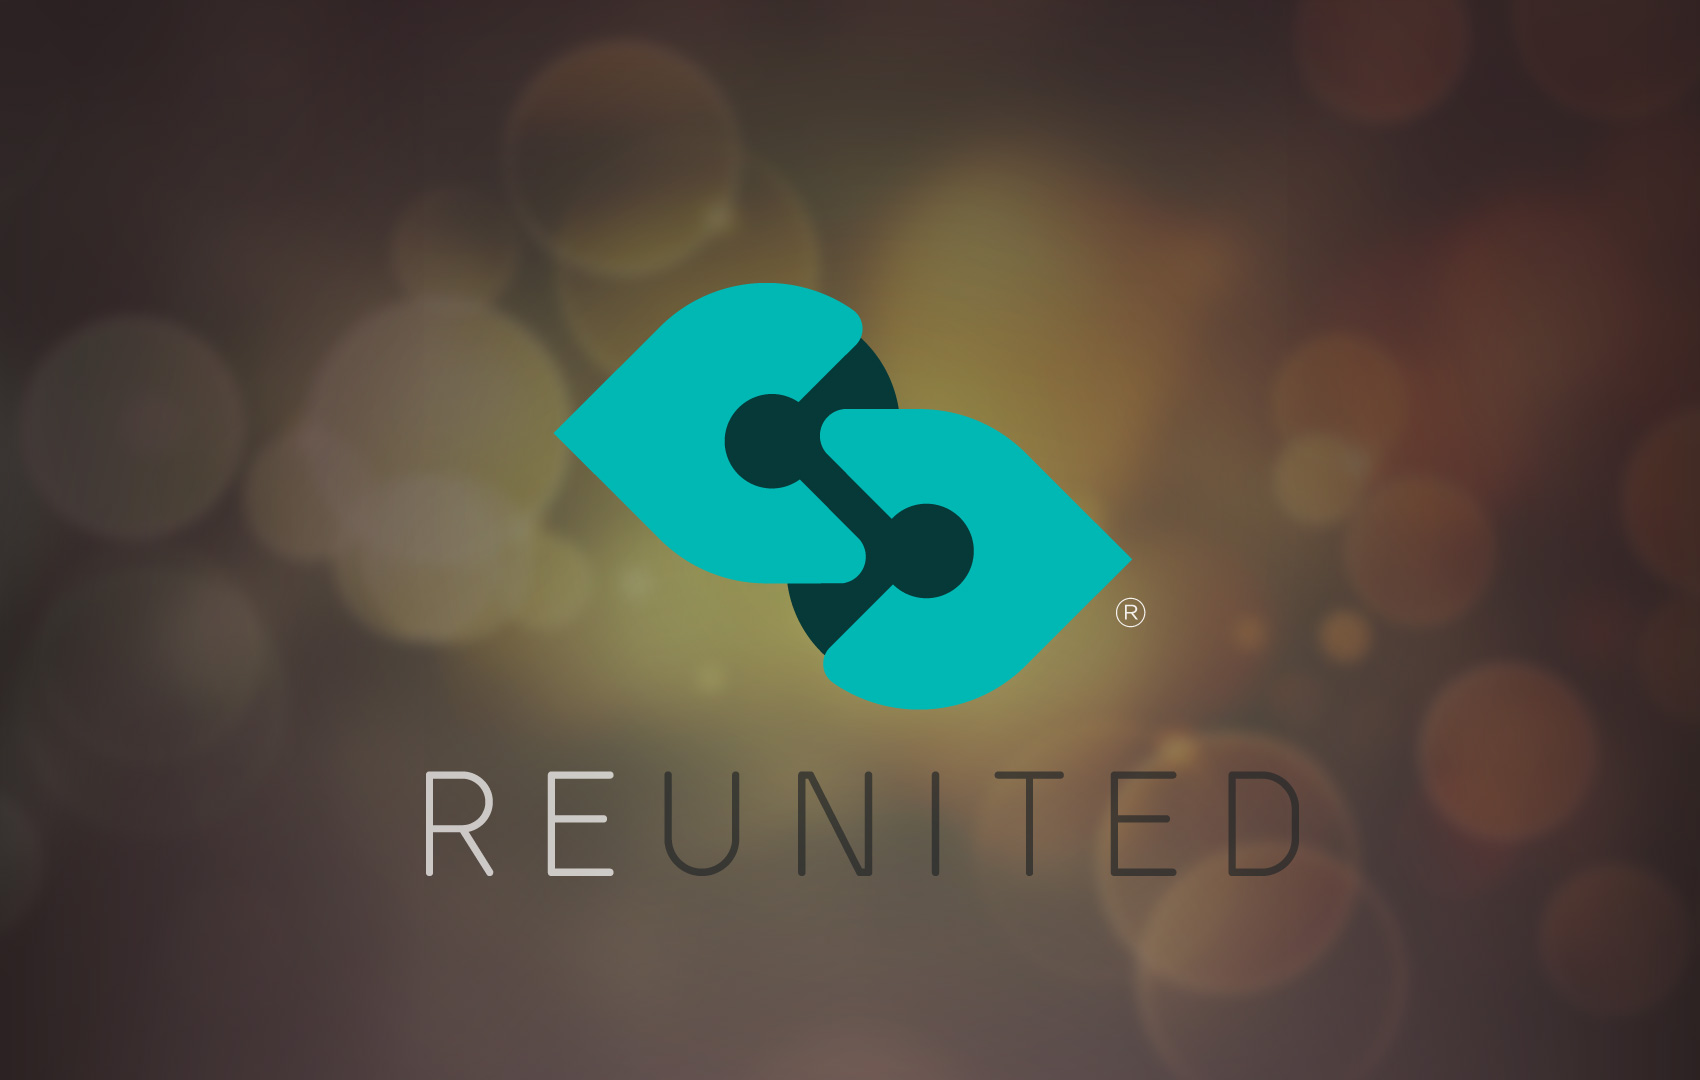 Reunited logo design by hibriden